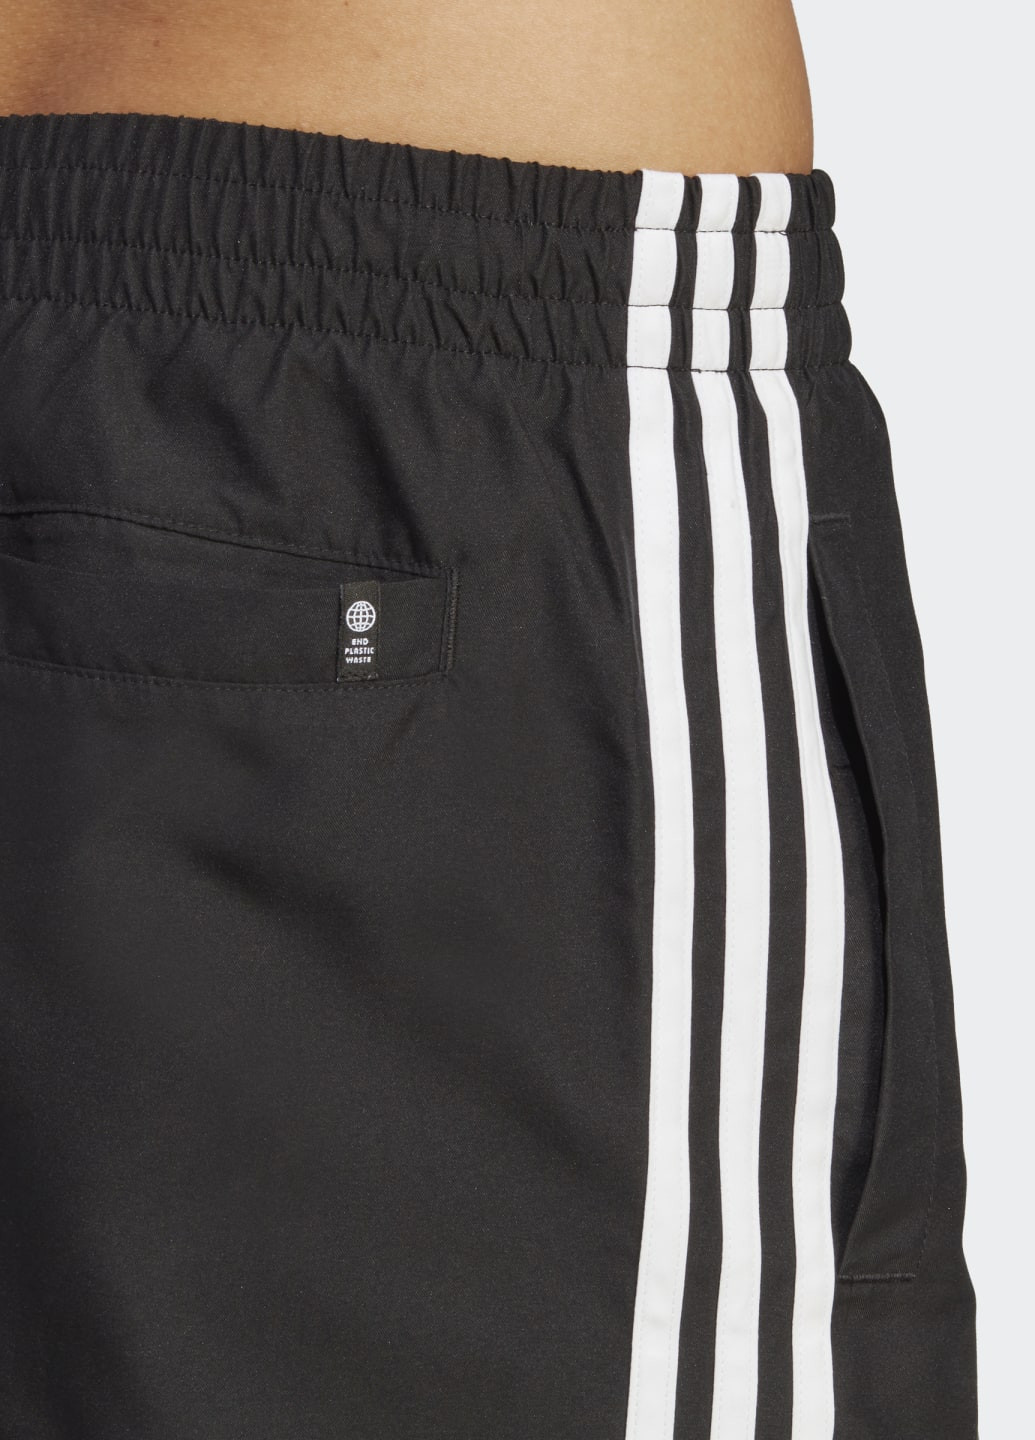 Мужские черные спортивные плавательные шорты adicolor 3-stripes adidas